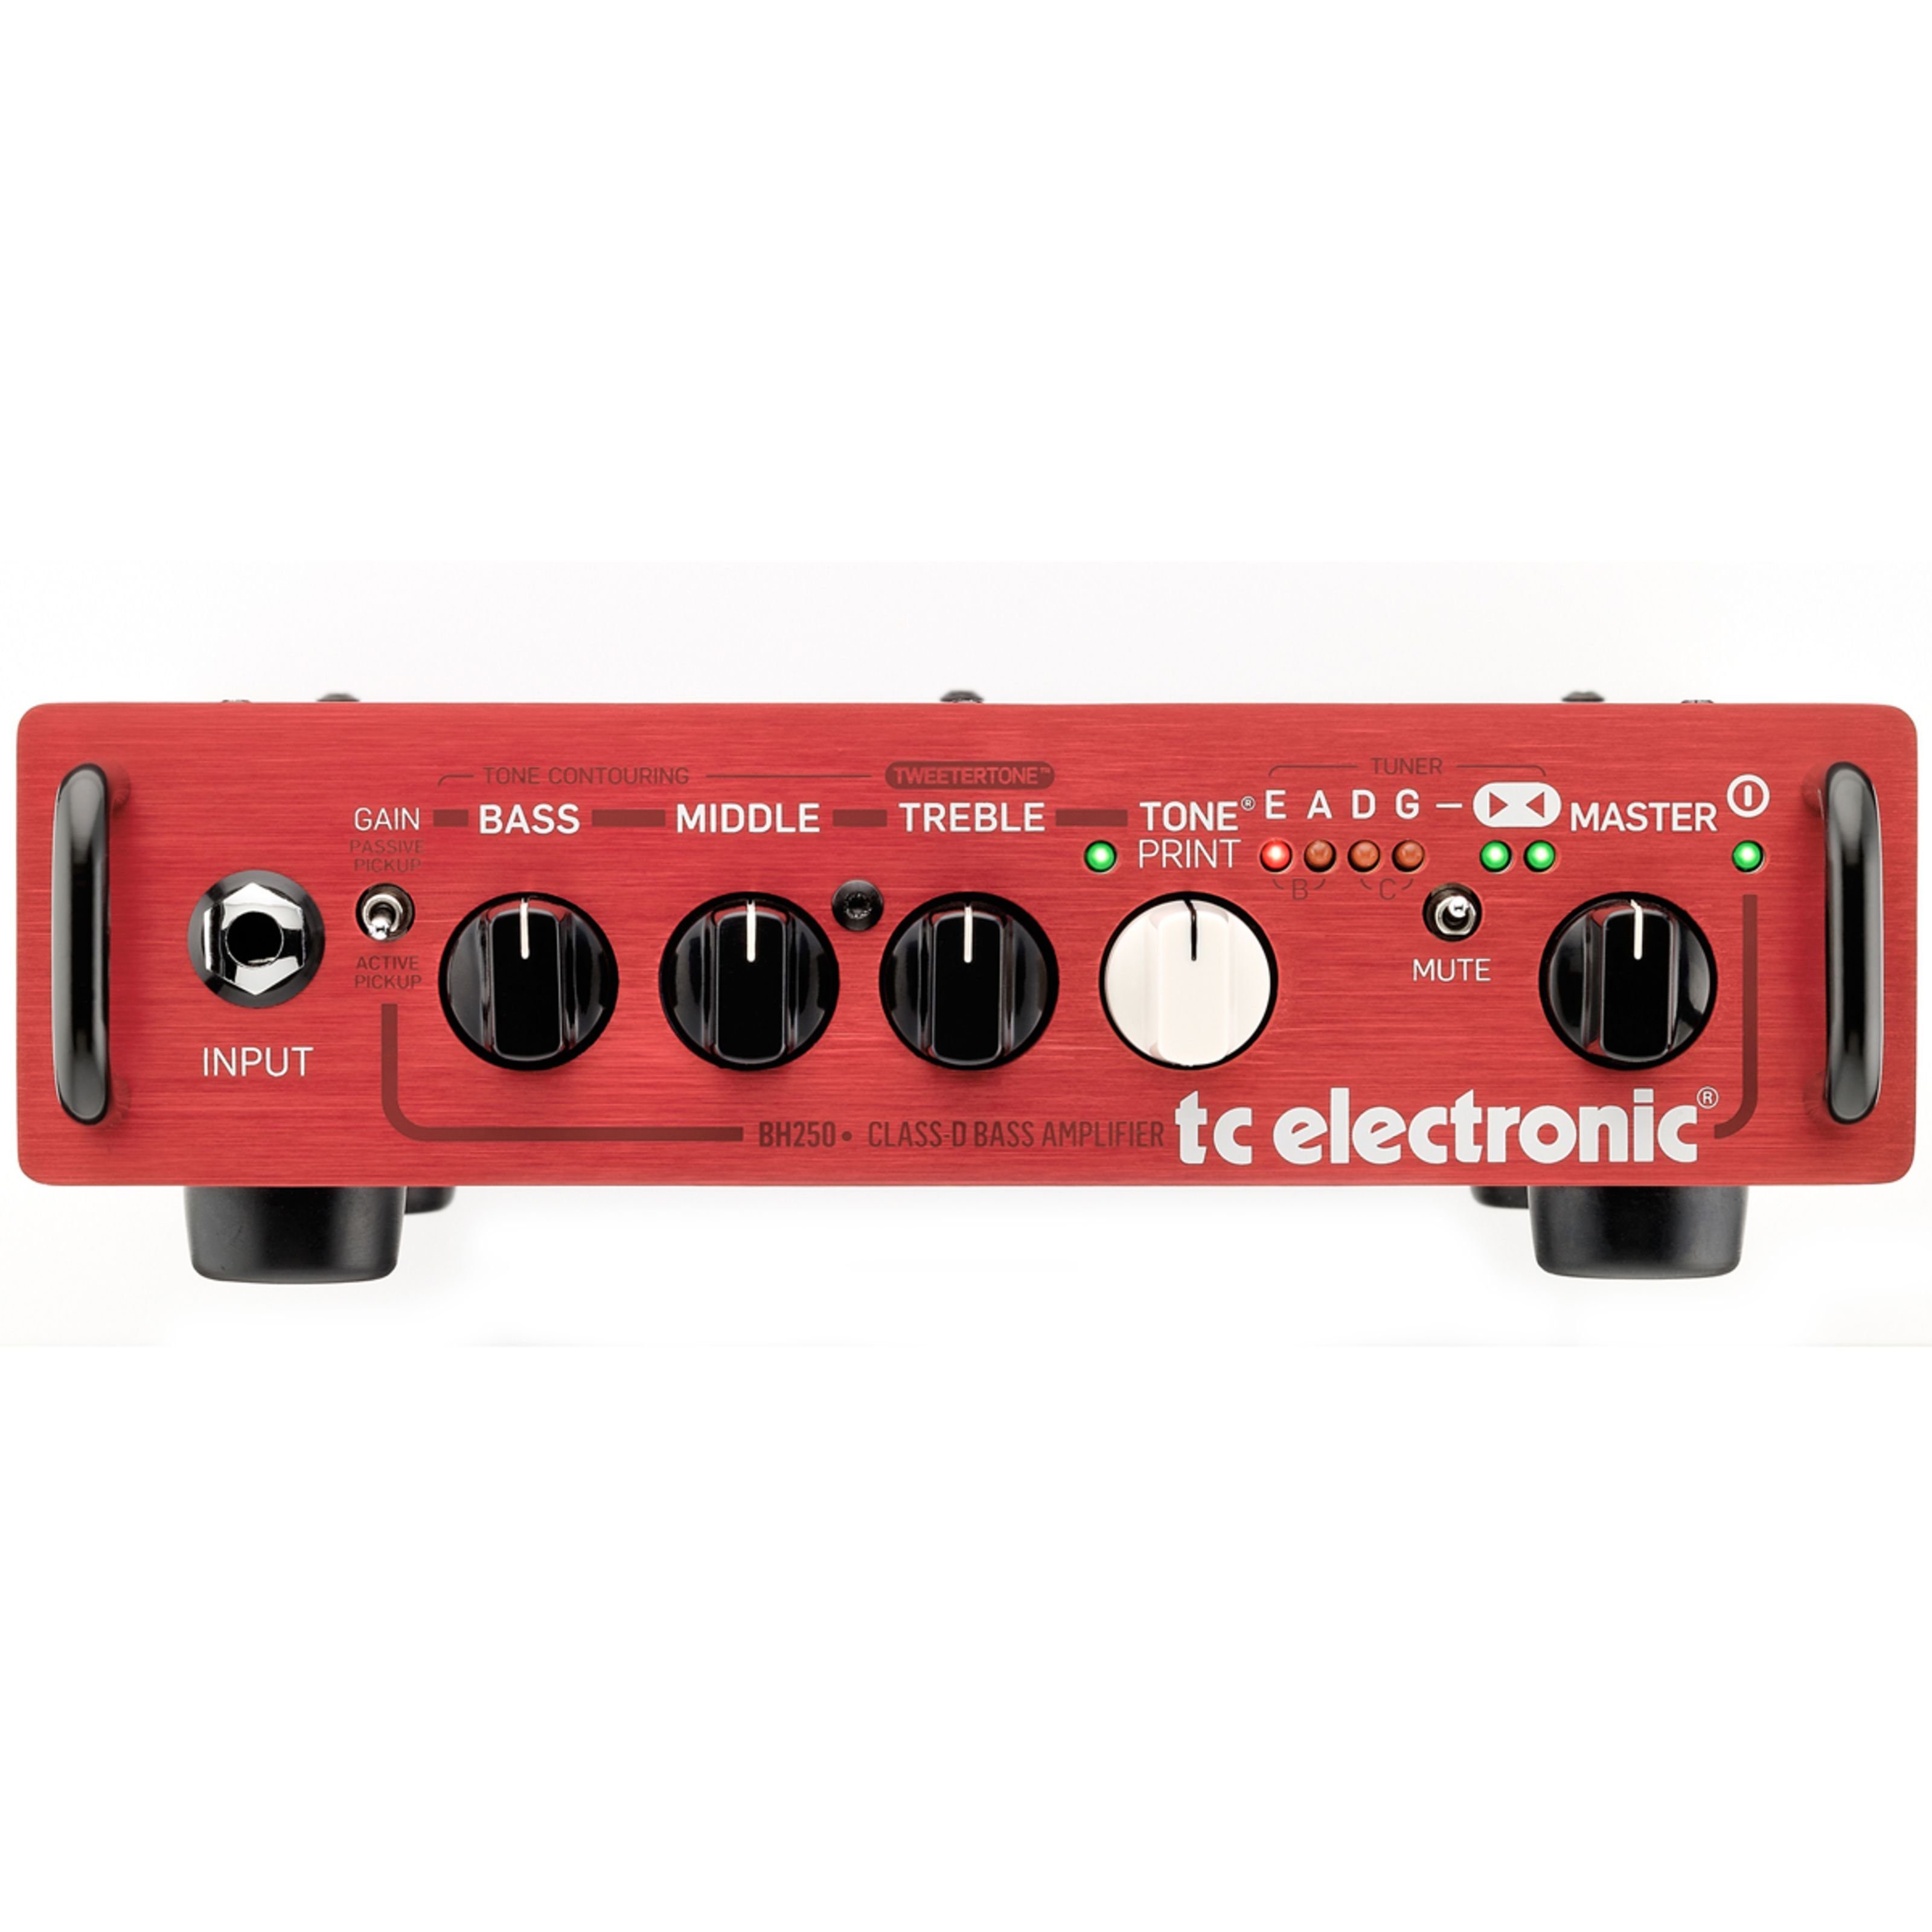 Bass - Electronic (BH250 Topteil) TC Verstärker